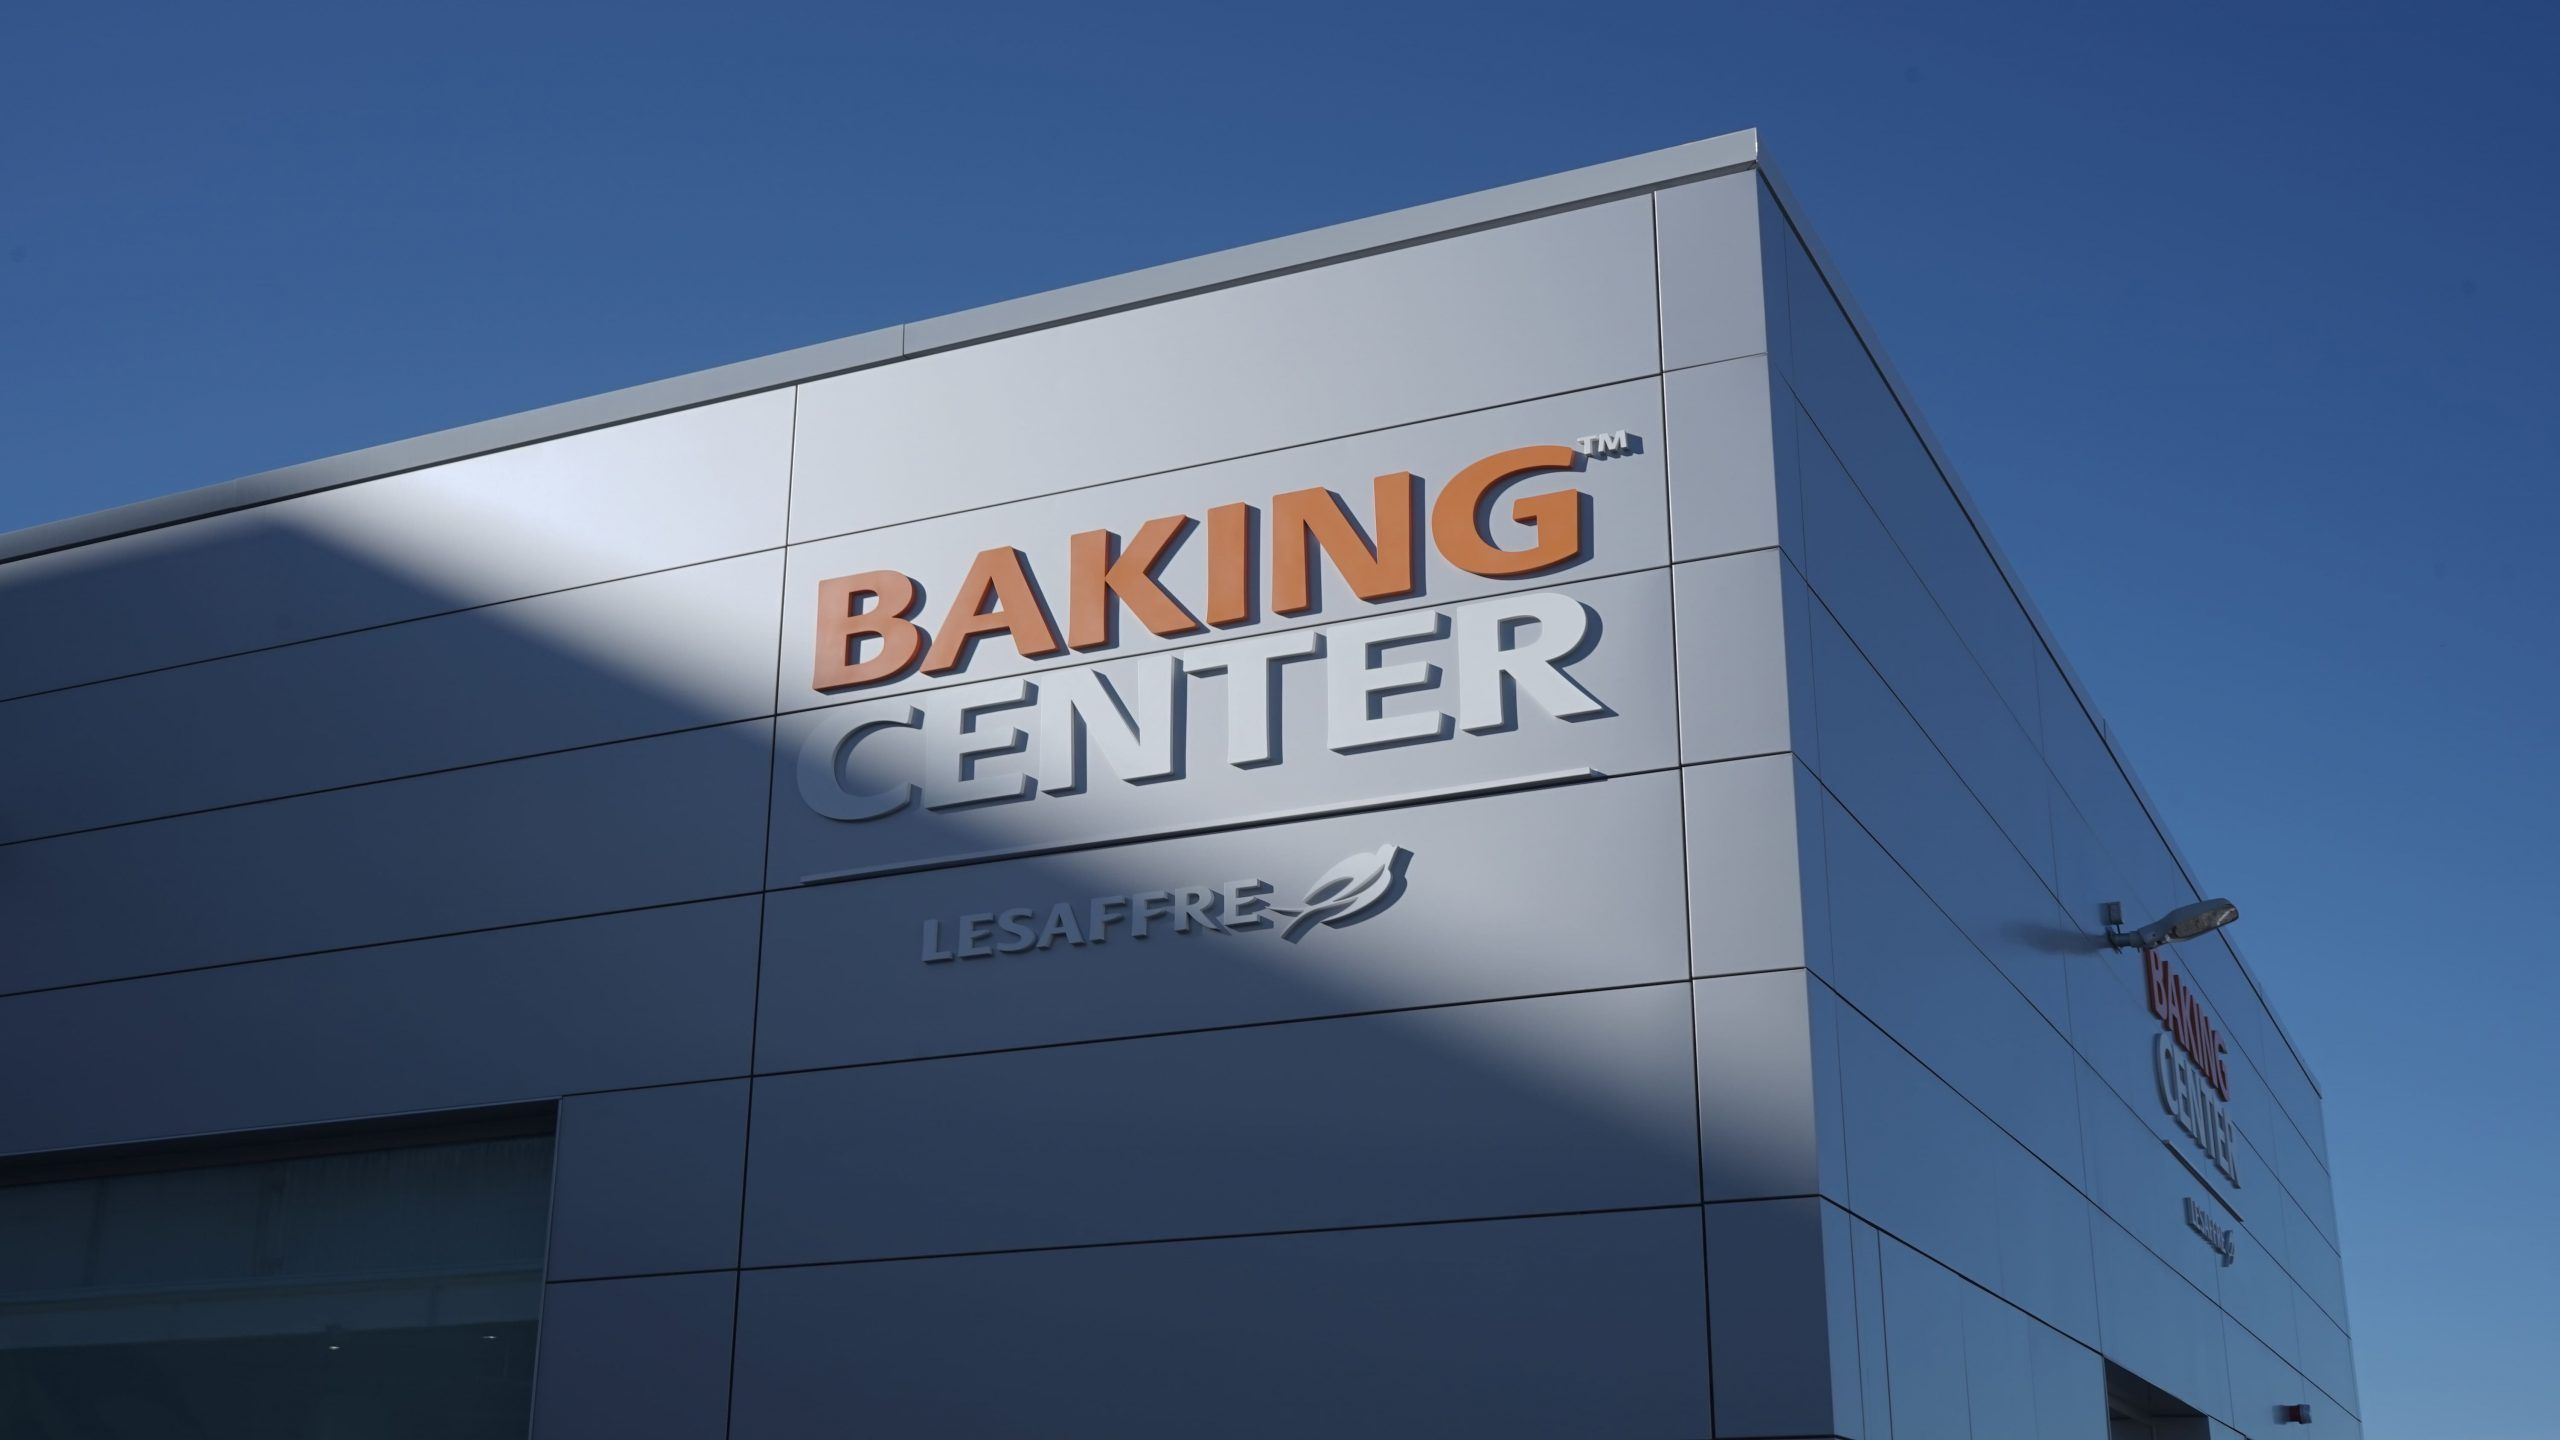 Baking Center de Lesaffre en Valladolid